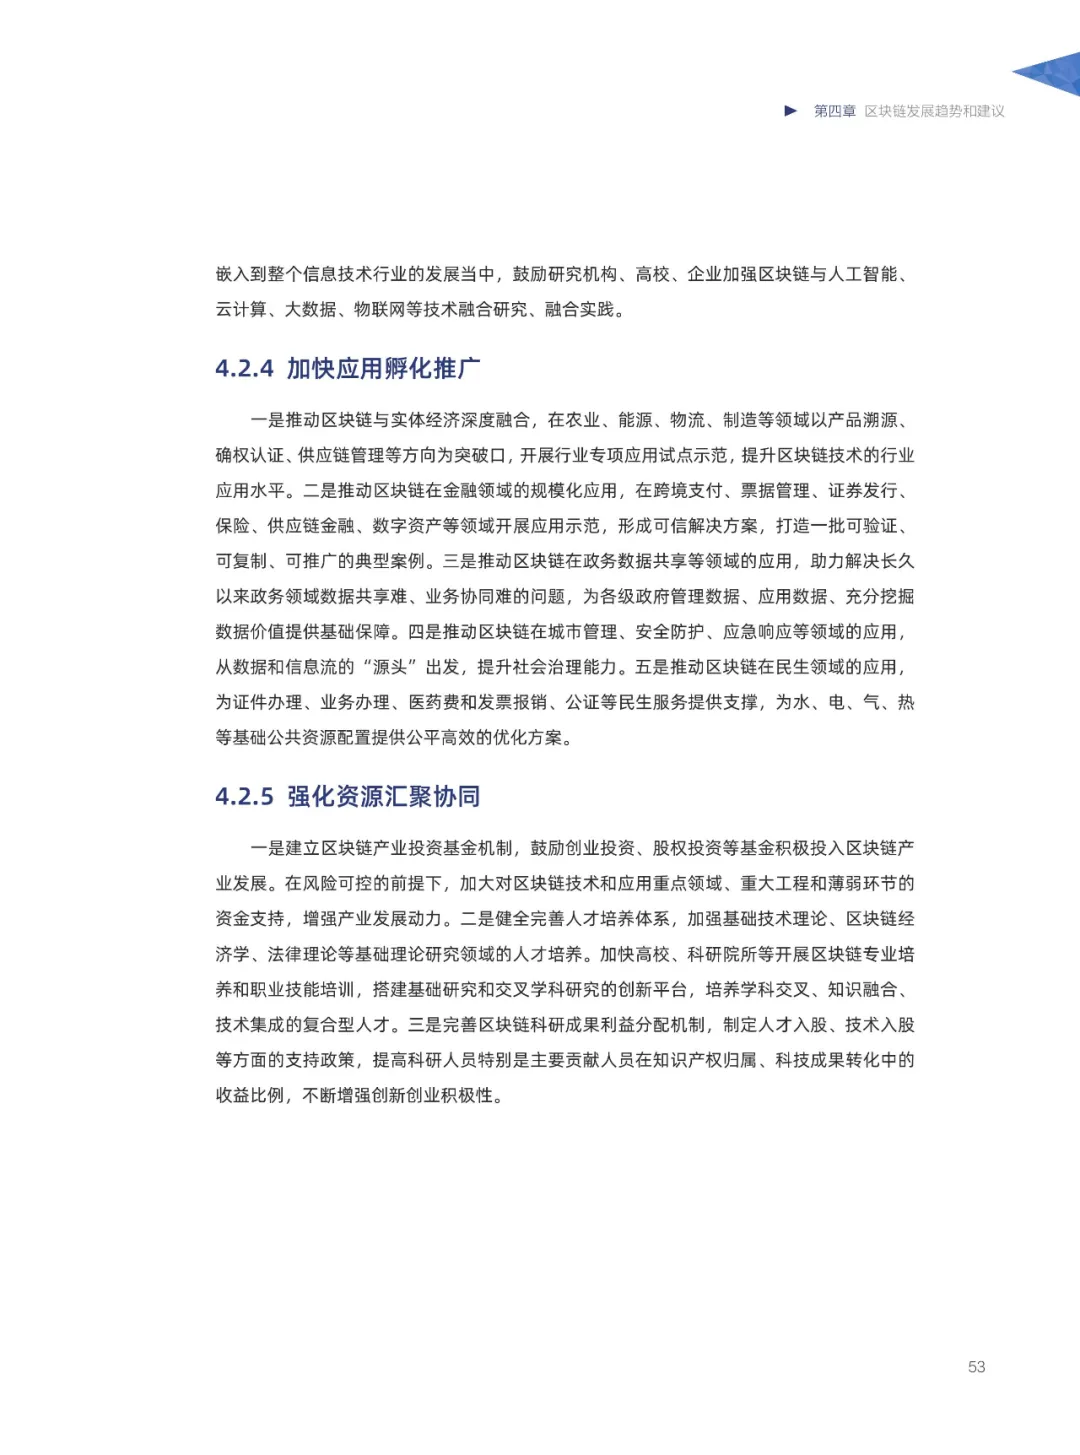 信任经济的崛起——2020中国区块链发展报告_加密算法_54